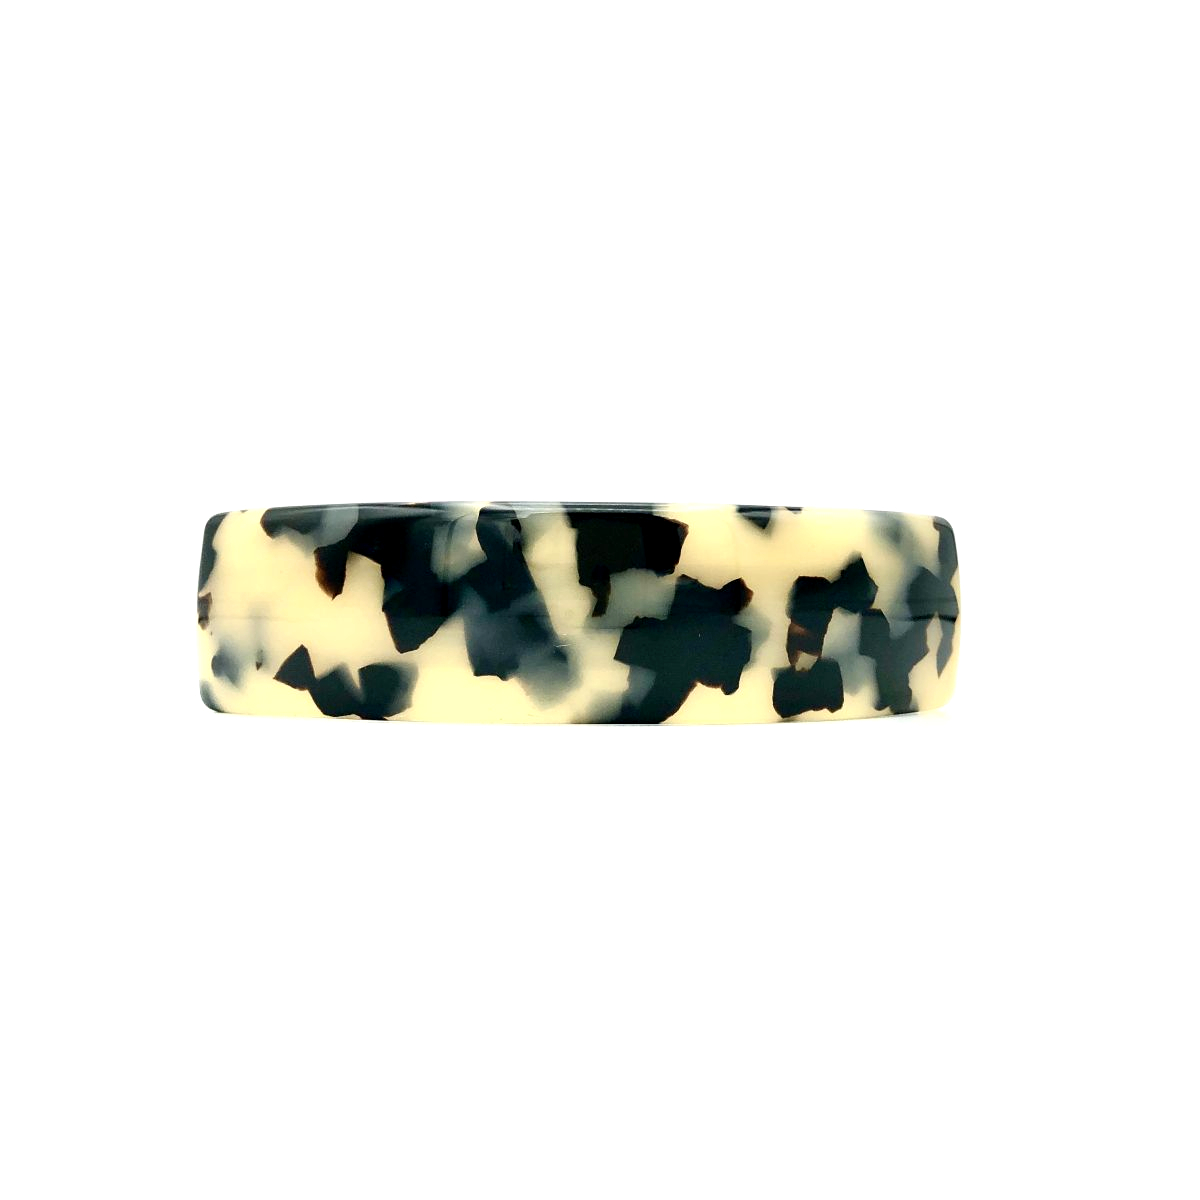 Haarspange schwarz/beige - groß, gebogen, schmal - 9,5 cm